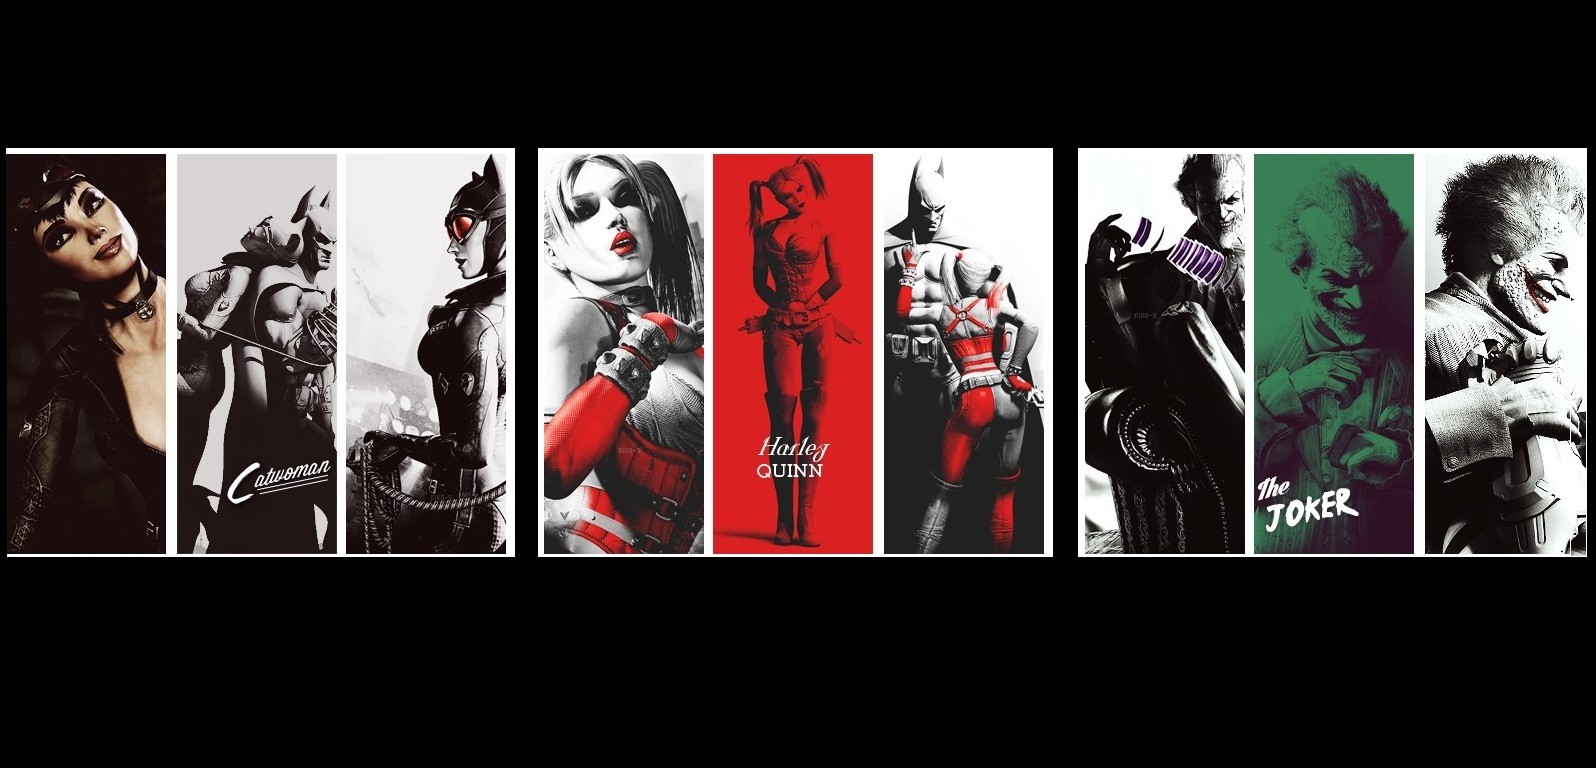 Batman Joker Batman Arkham City Video Games Rocksteady Studios The Riddler Harley Quinn Catwoman Vid 1596x768